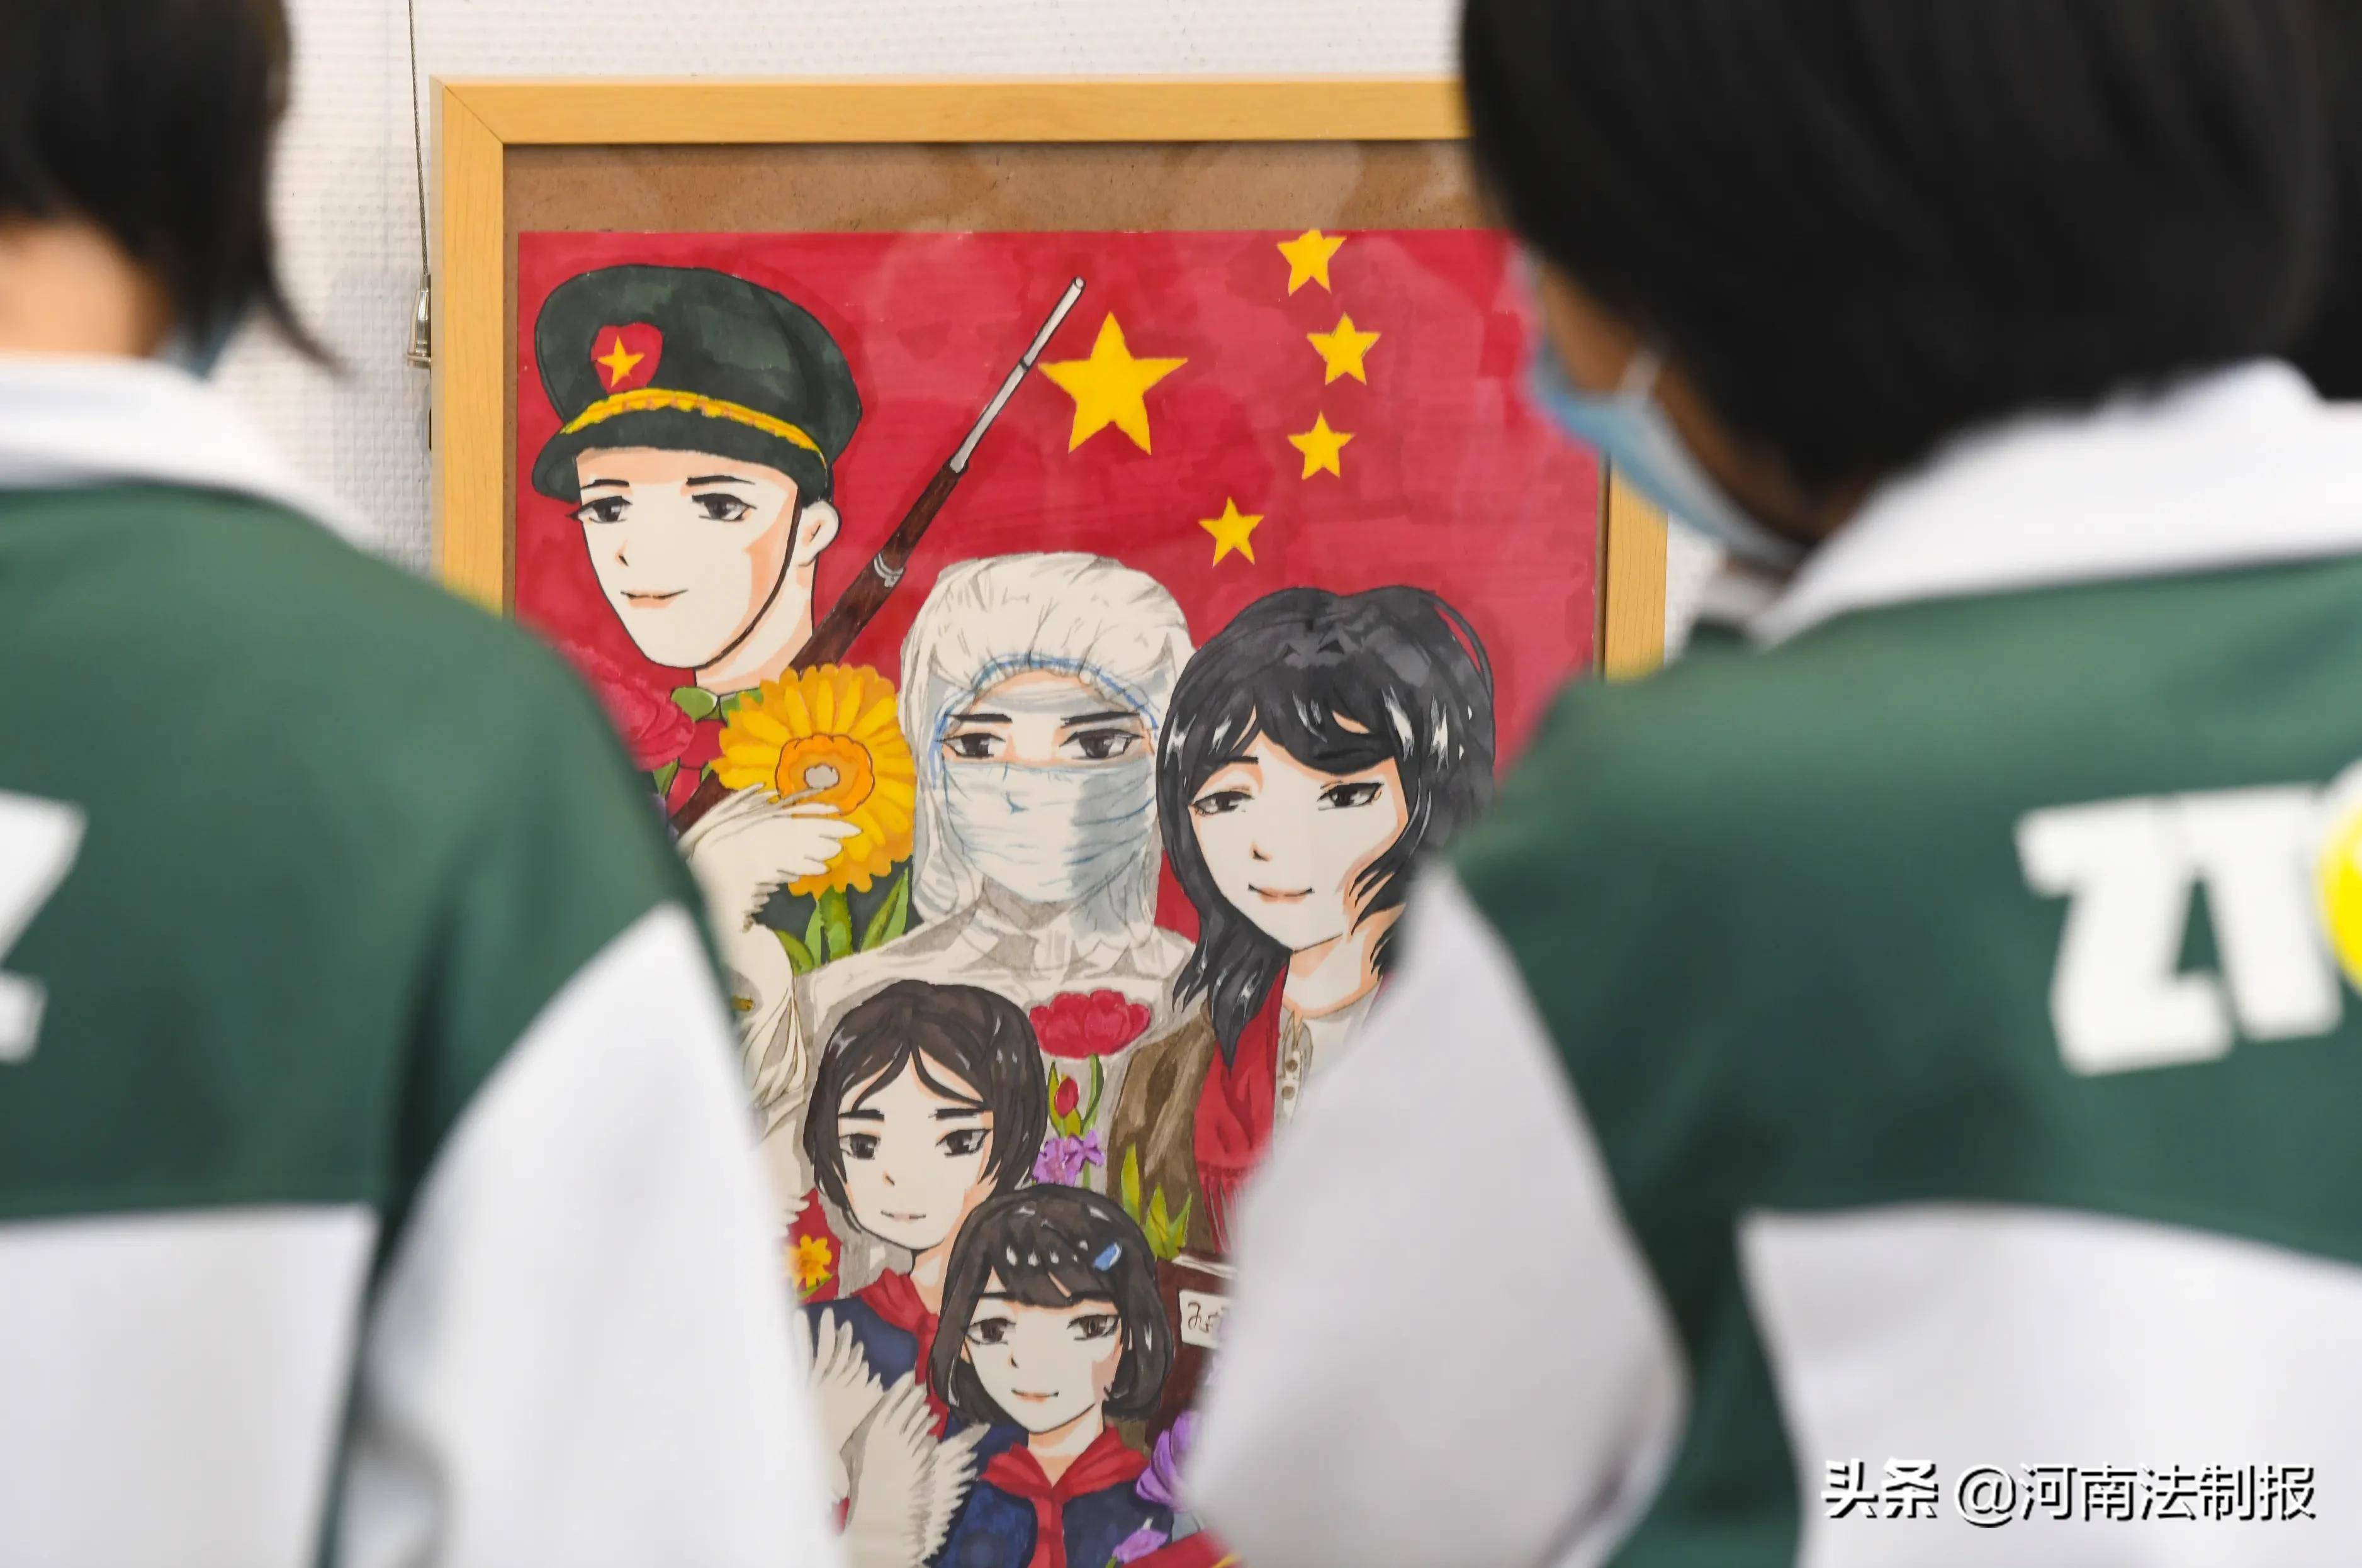 篆刻,绘画,剪纸,摄影等多种形式,展现了郑州中小学生对总体国家安全观